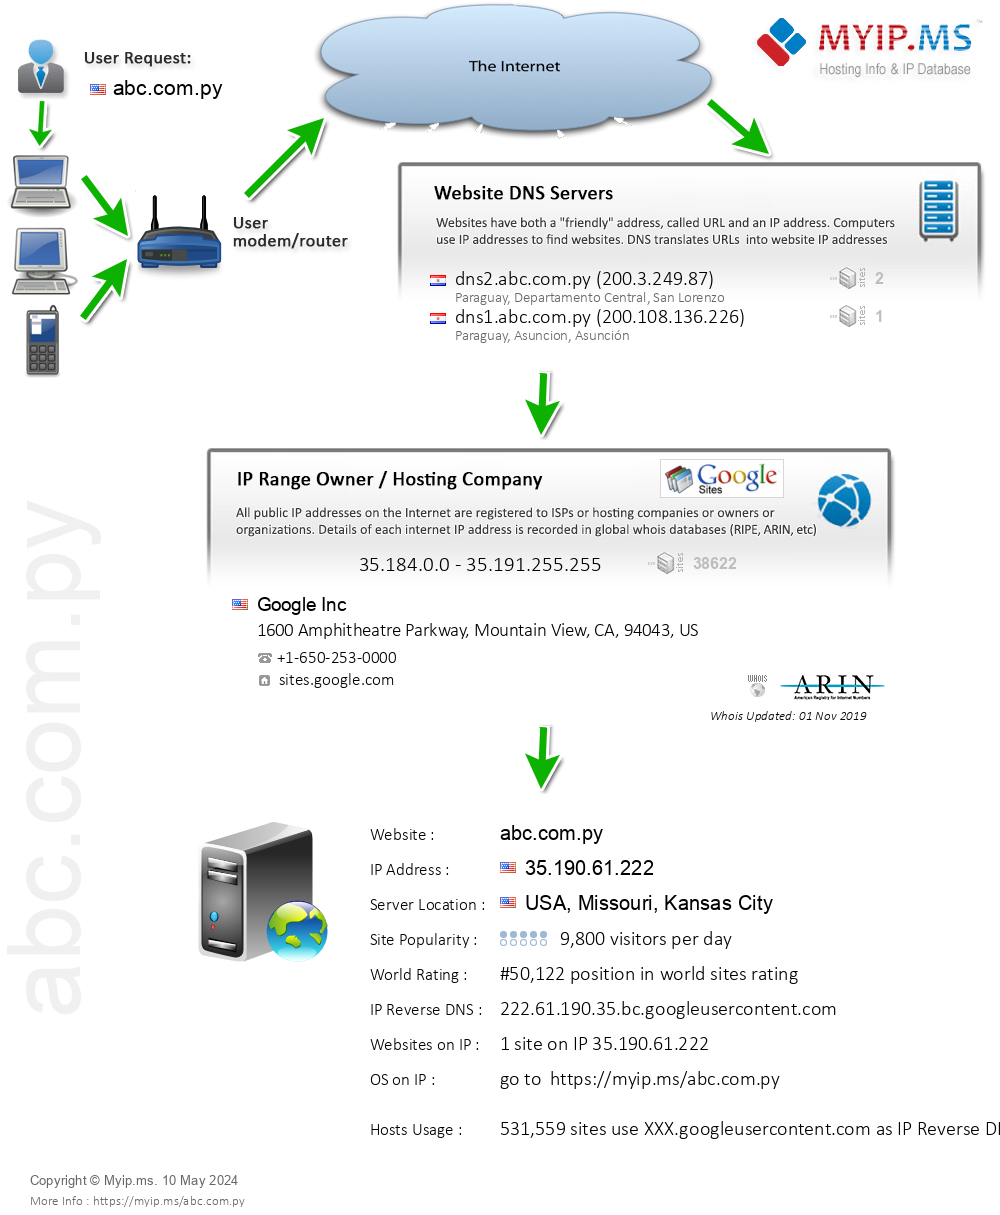 Abc.com.py - Website Hosting Visual IP Diagram